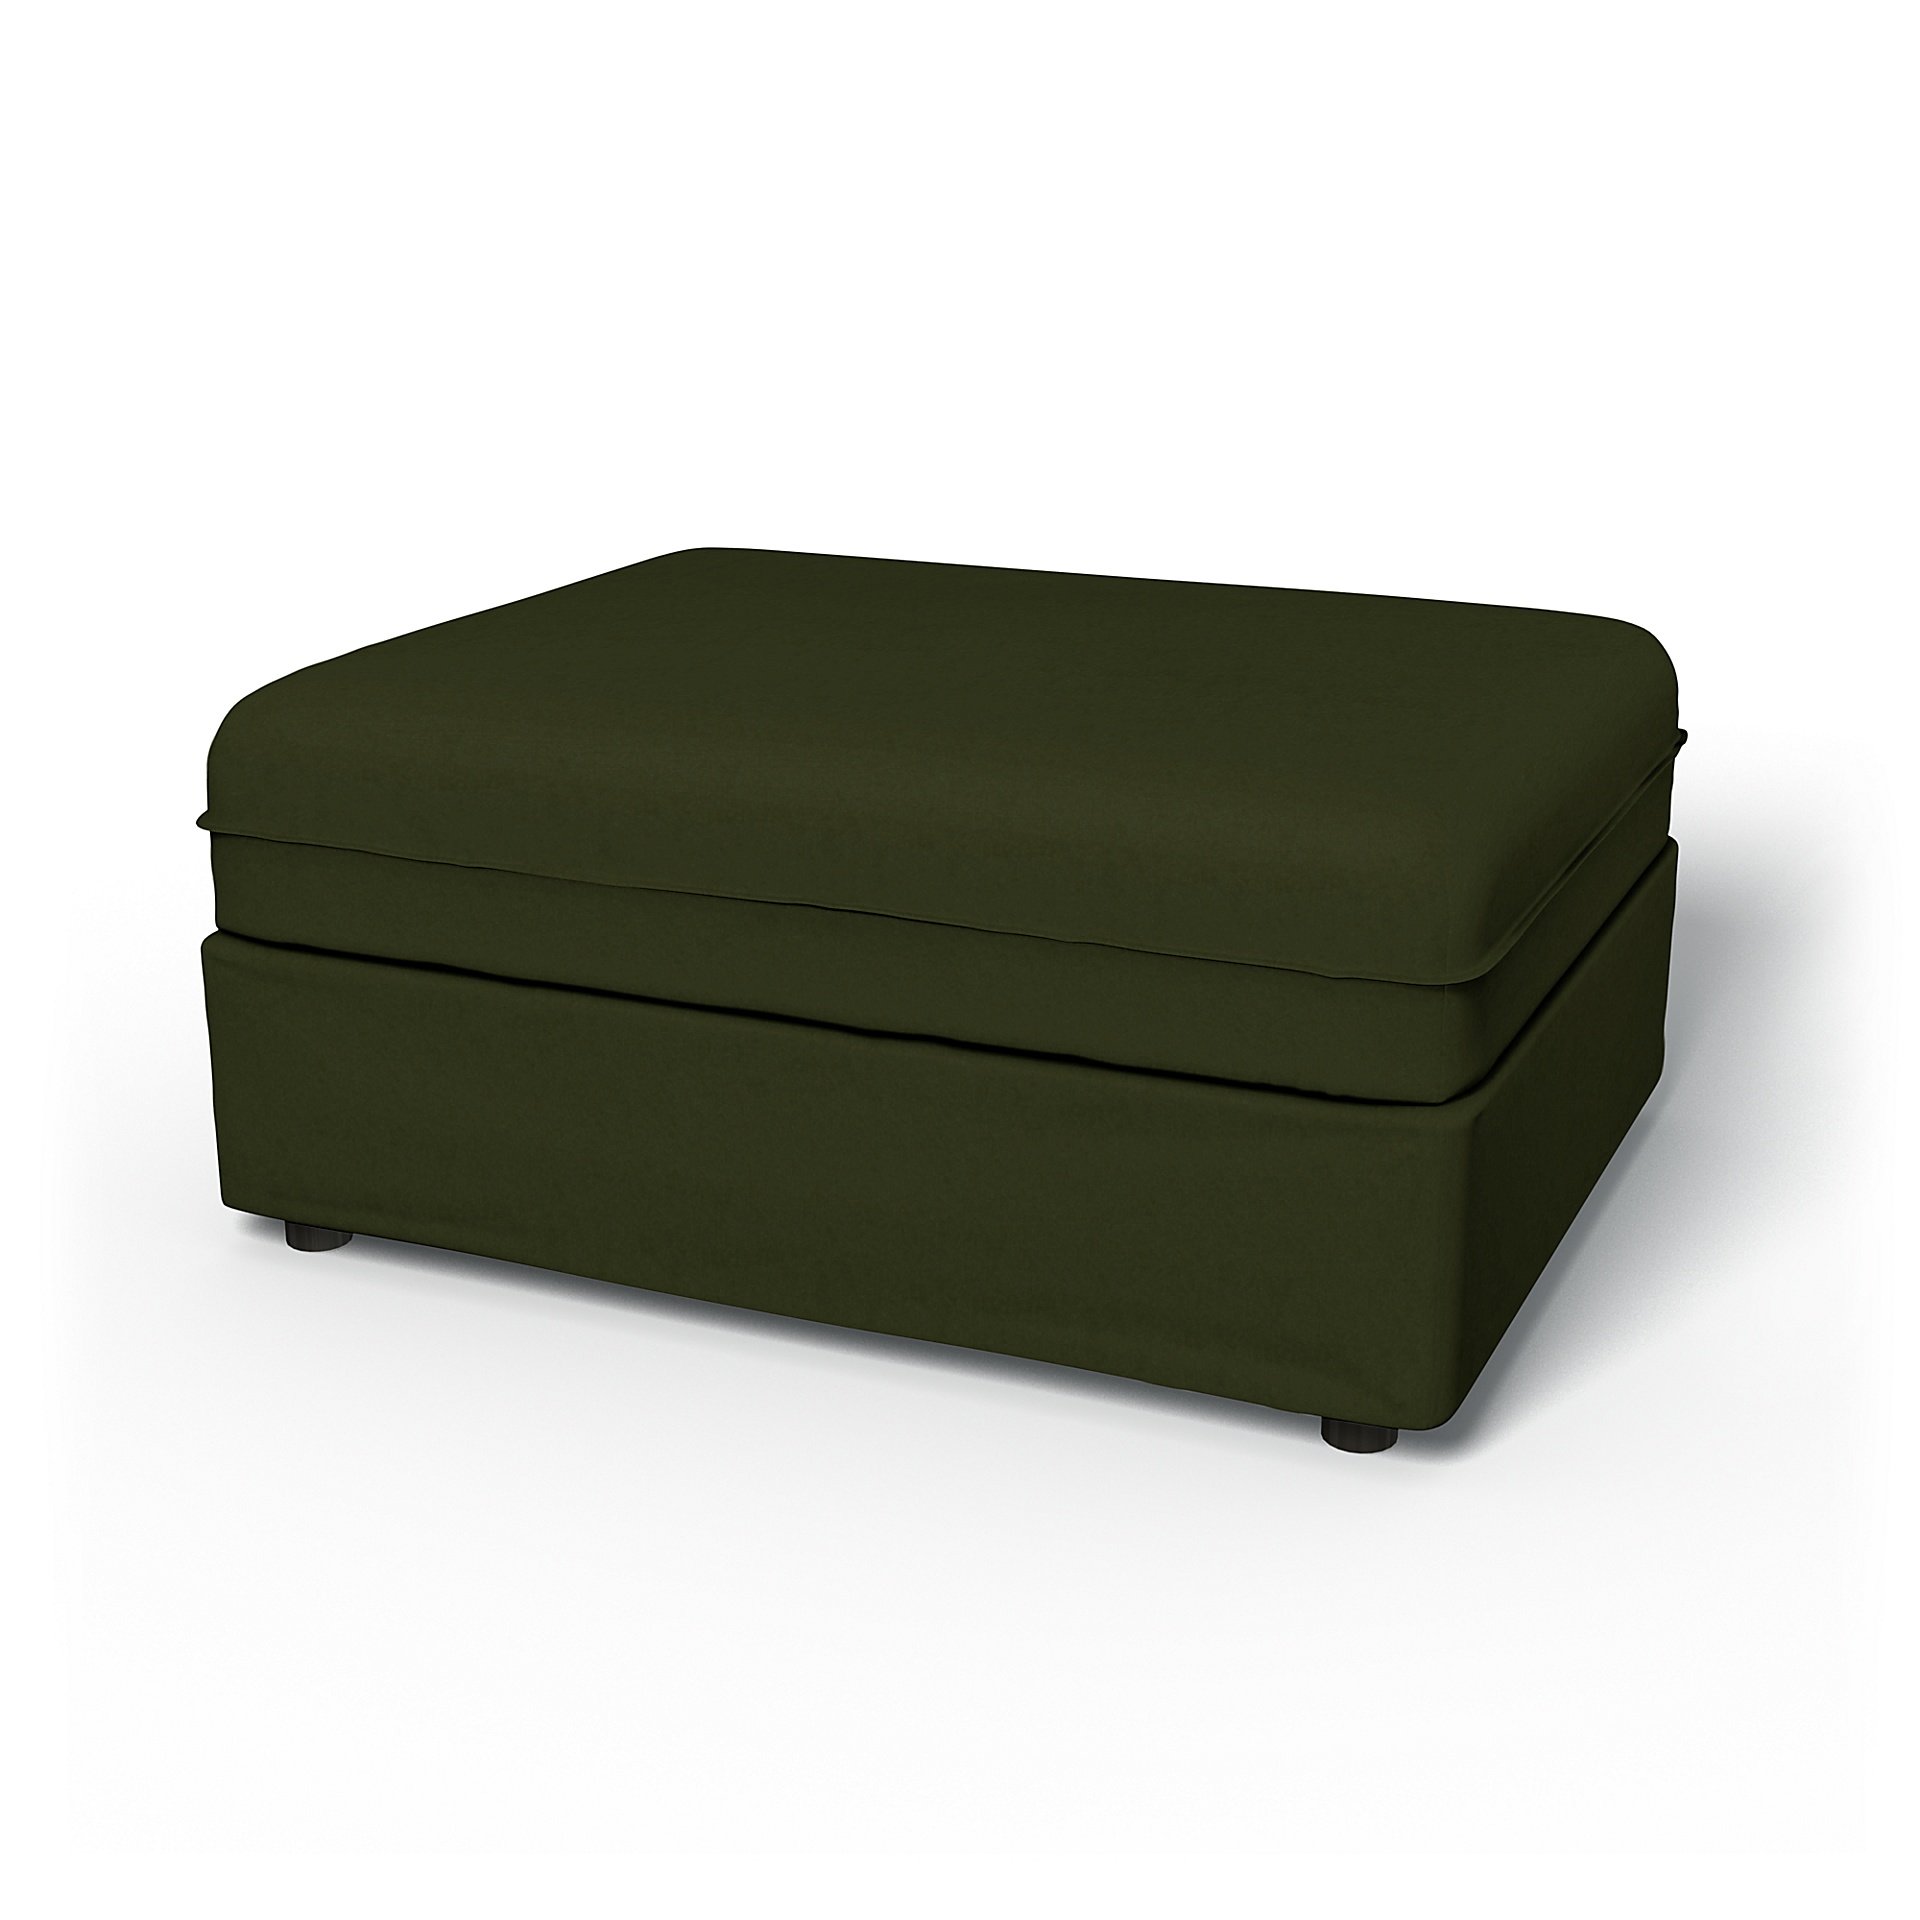 IKEA - Vallentuna Seat Module Cover 100x80cm 39x32in, Moss, Velvet - Bemz